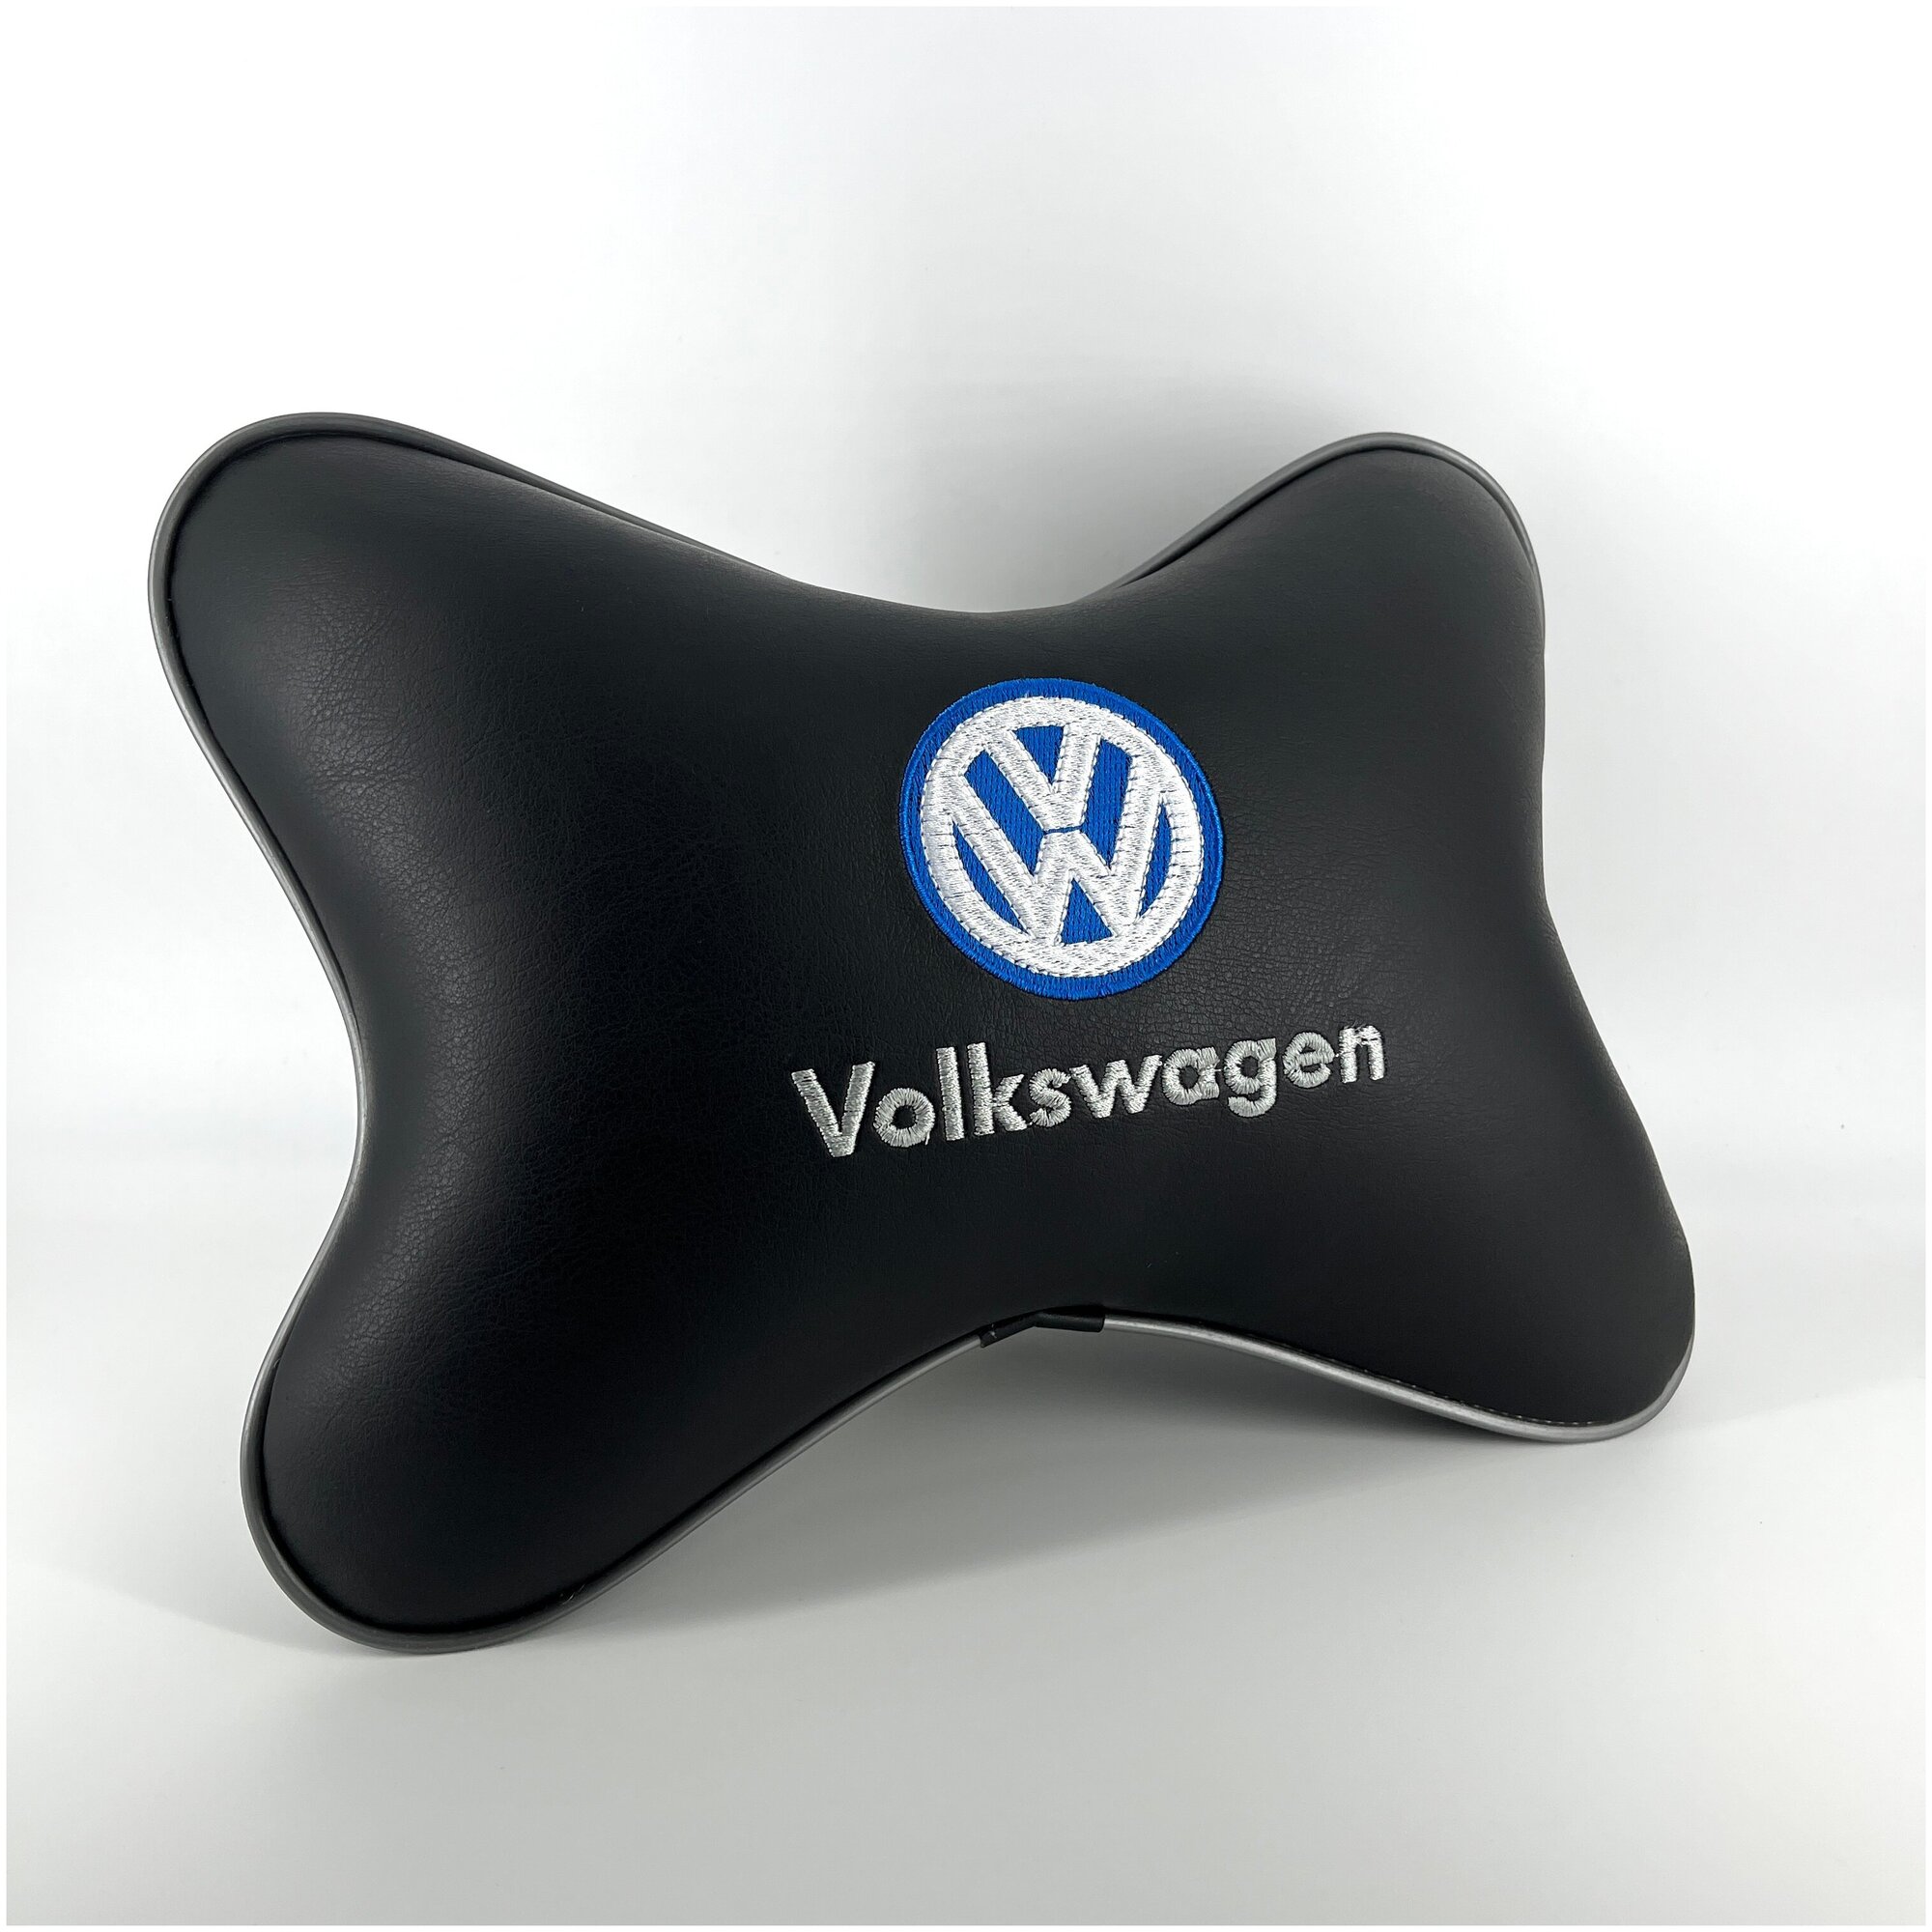 Автомобильная подушка под шею или поясницу с вышивкой для Volkswagen. Подарок автомобилисту